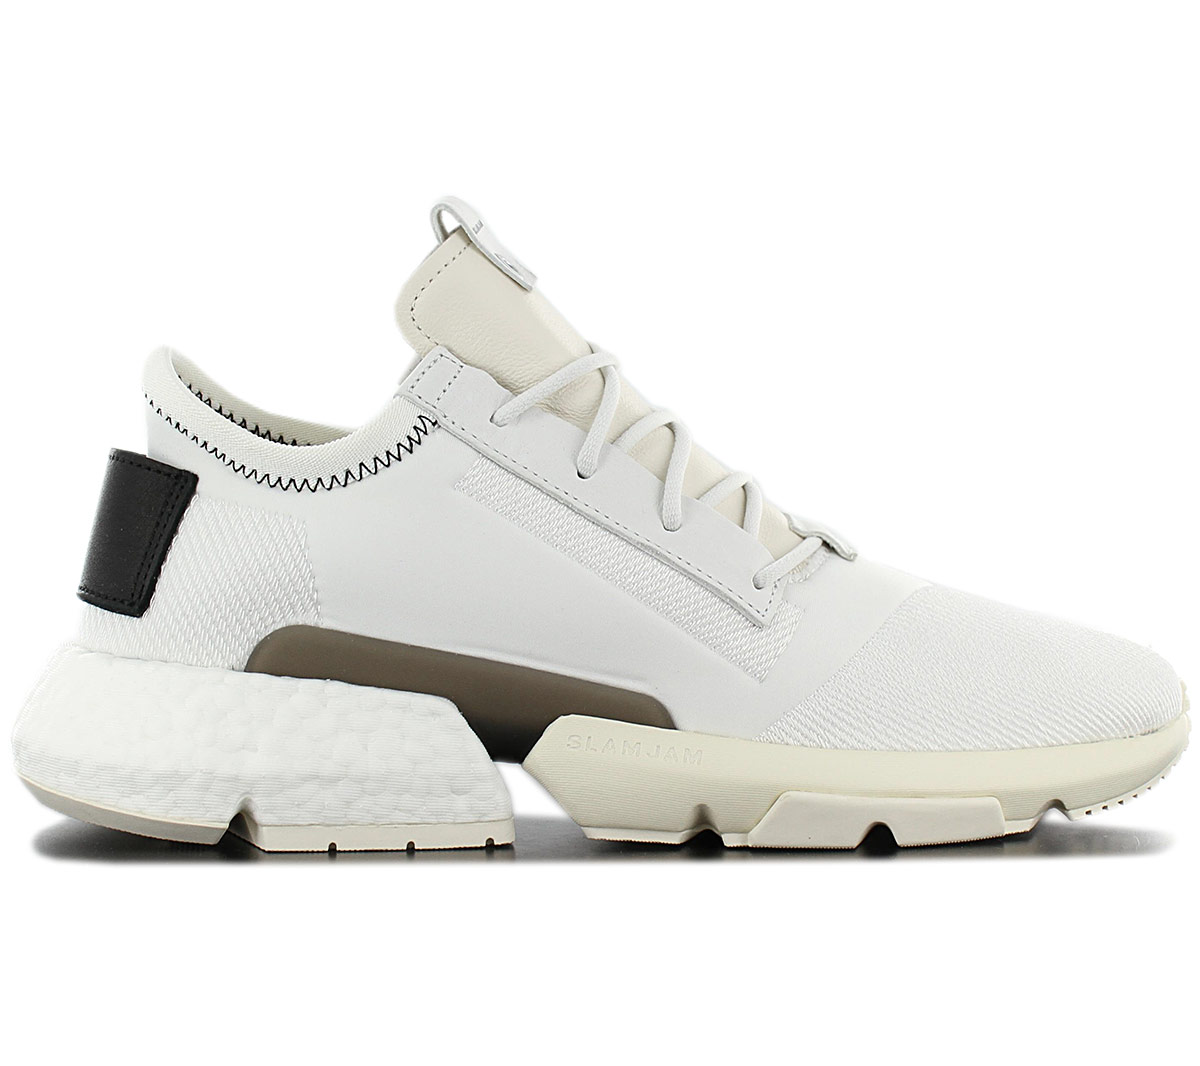 Adidas Consortium POD-S3.1 X Slam Jam-BB9484 мужские кроссовки Boost туфли  новые | eBay